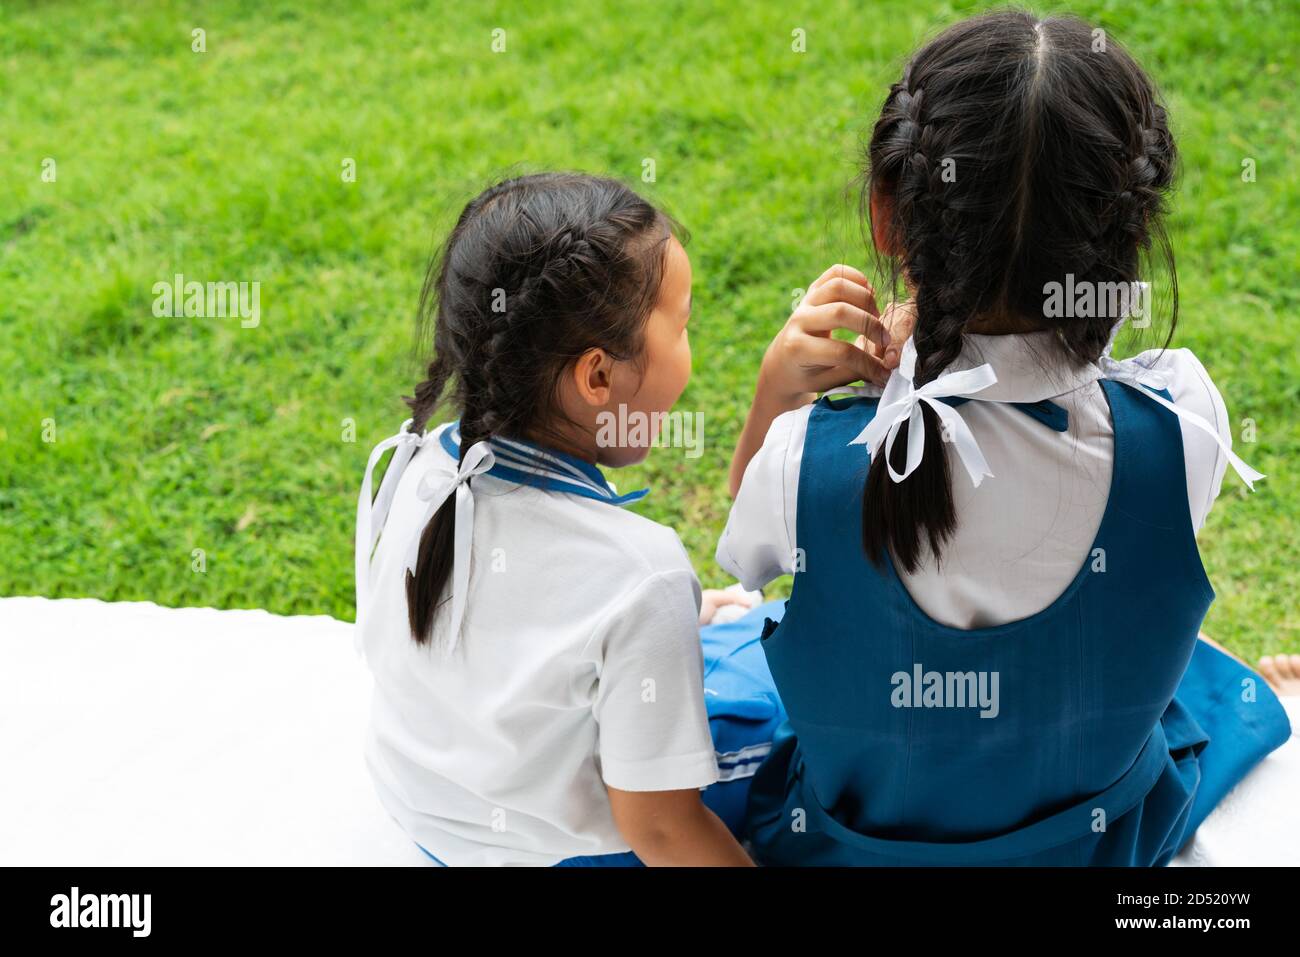 Deux petites filles asiatiques sisters hugging heureux post dans l'uniforme scolaire, concept retour à l'école Banque D'Images